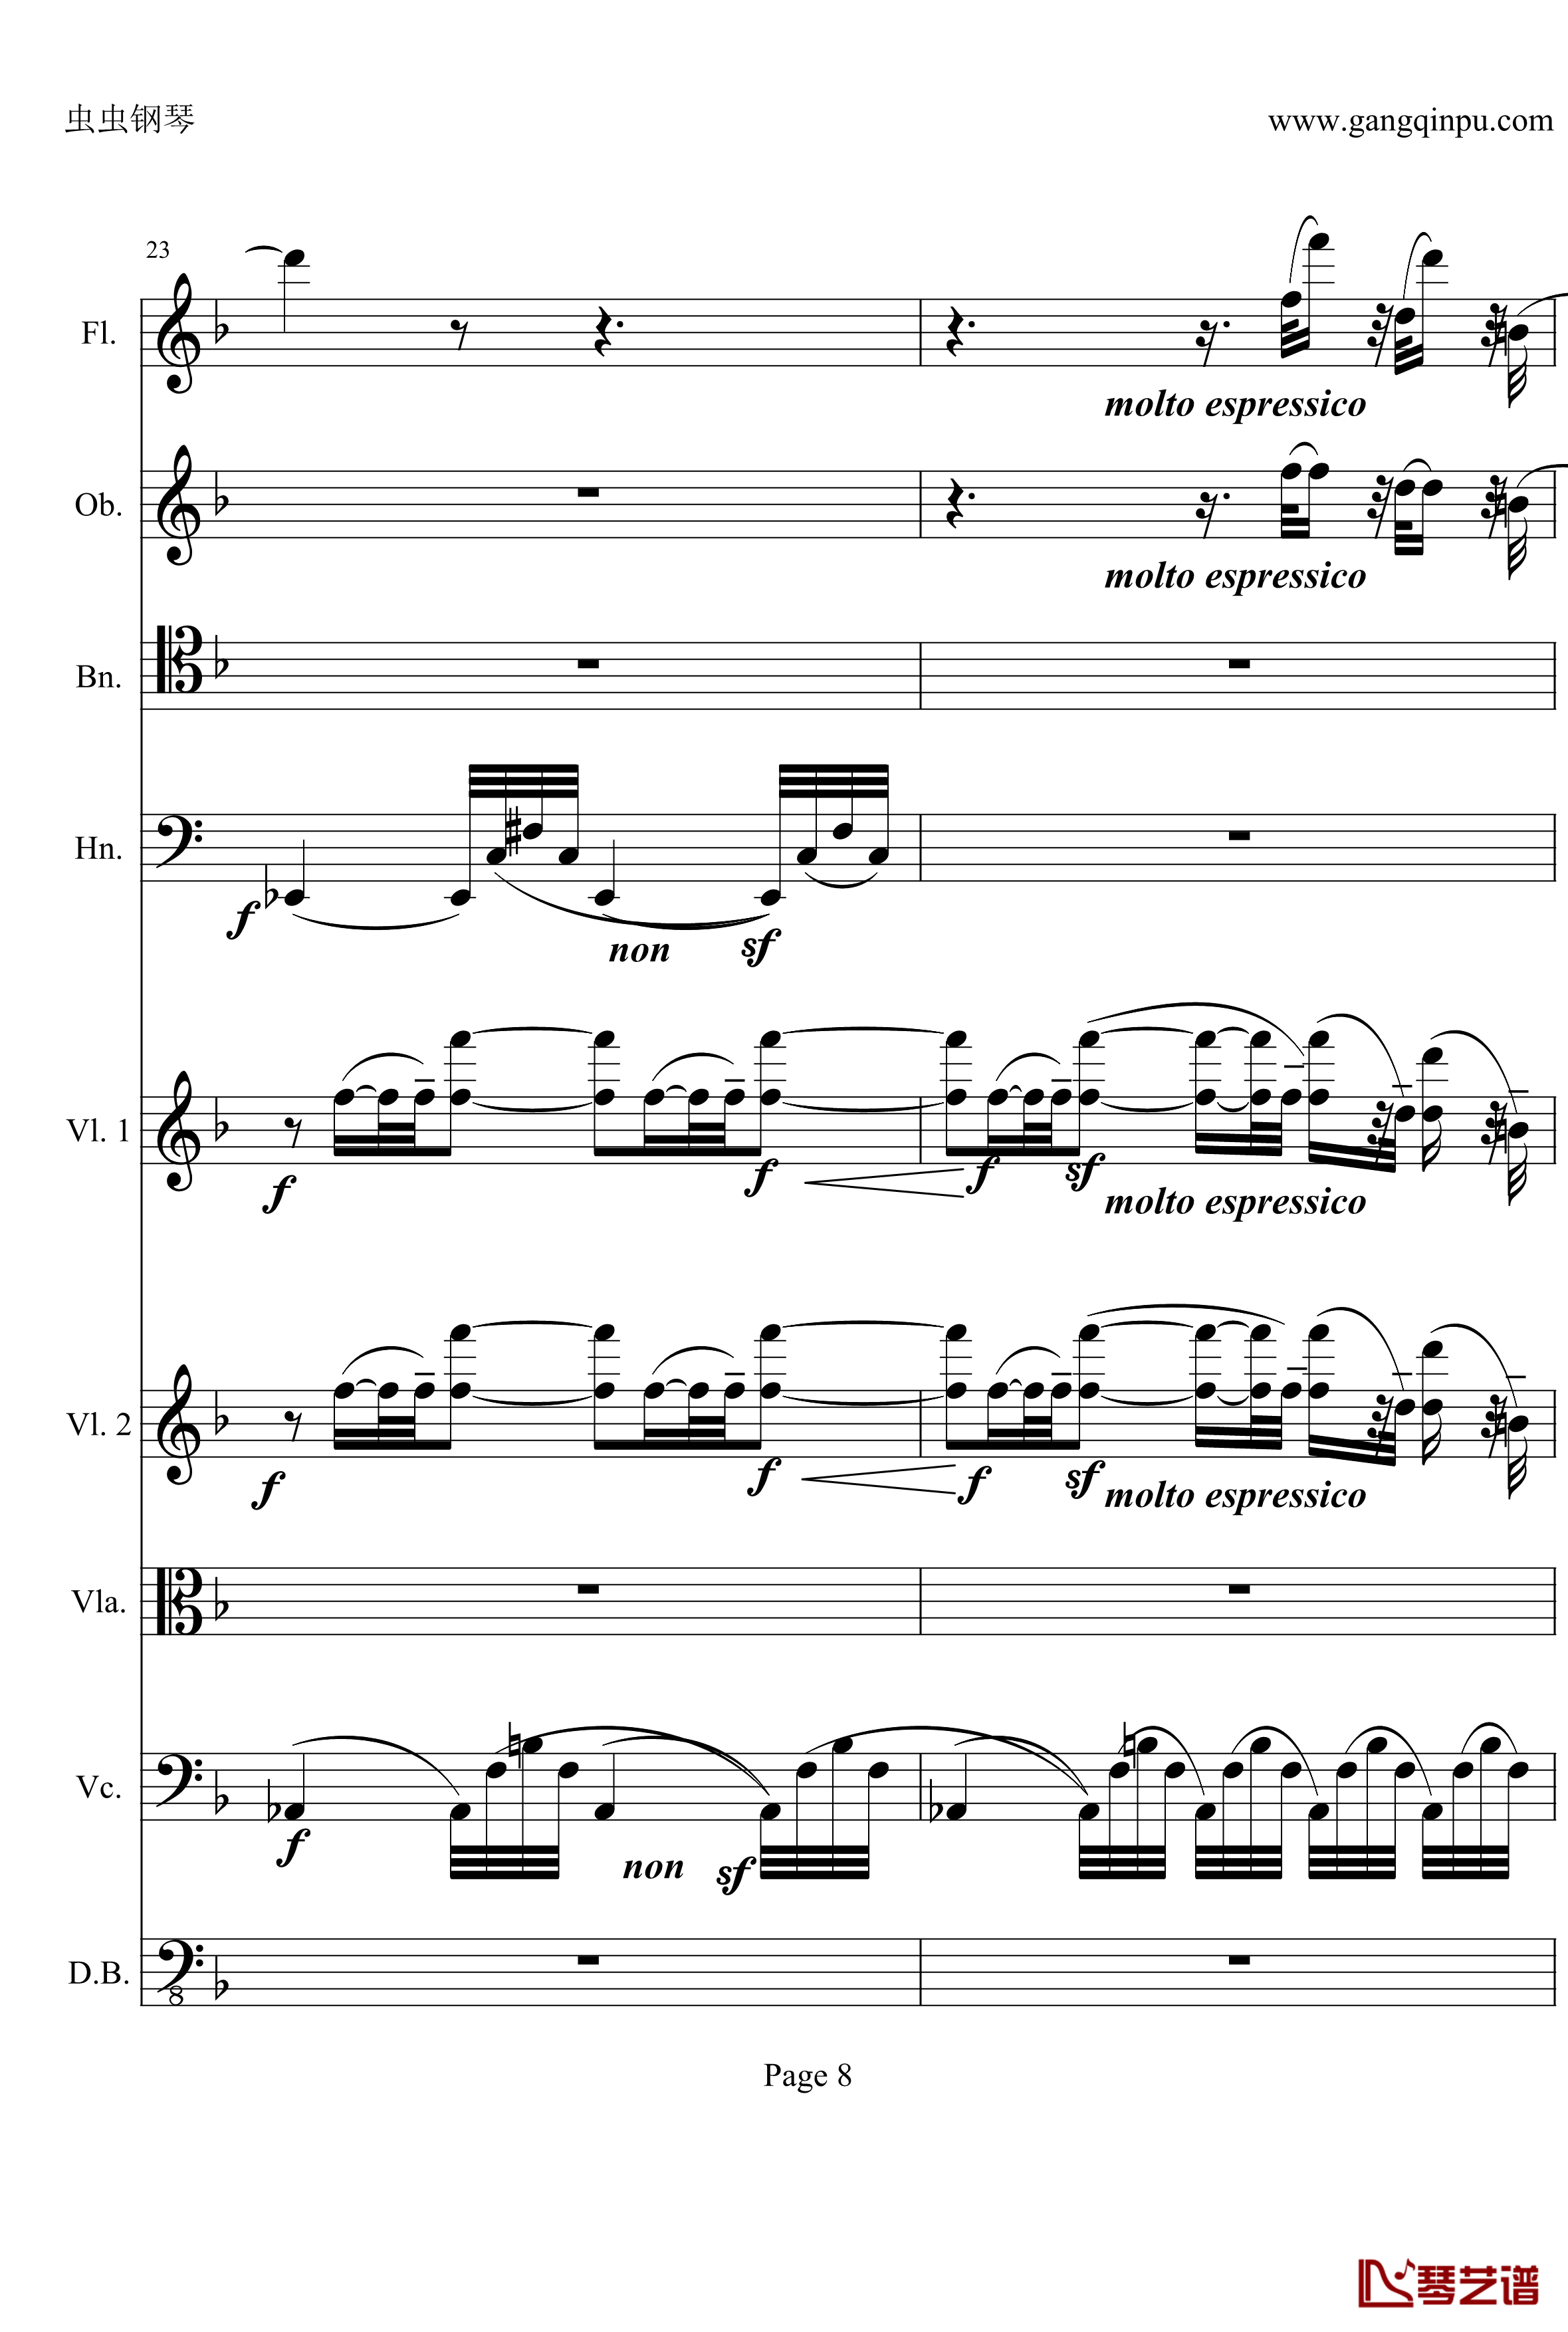 奏鸣曲之交响钢琴谱-第21-Ⅱ-贝多芬-beethoven8